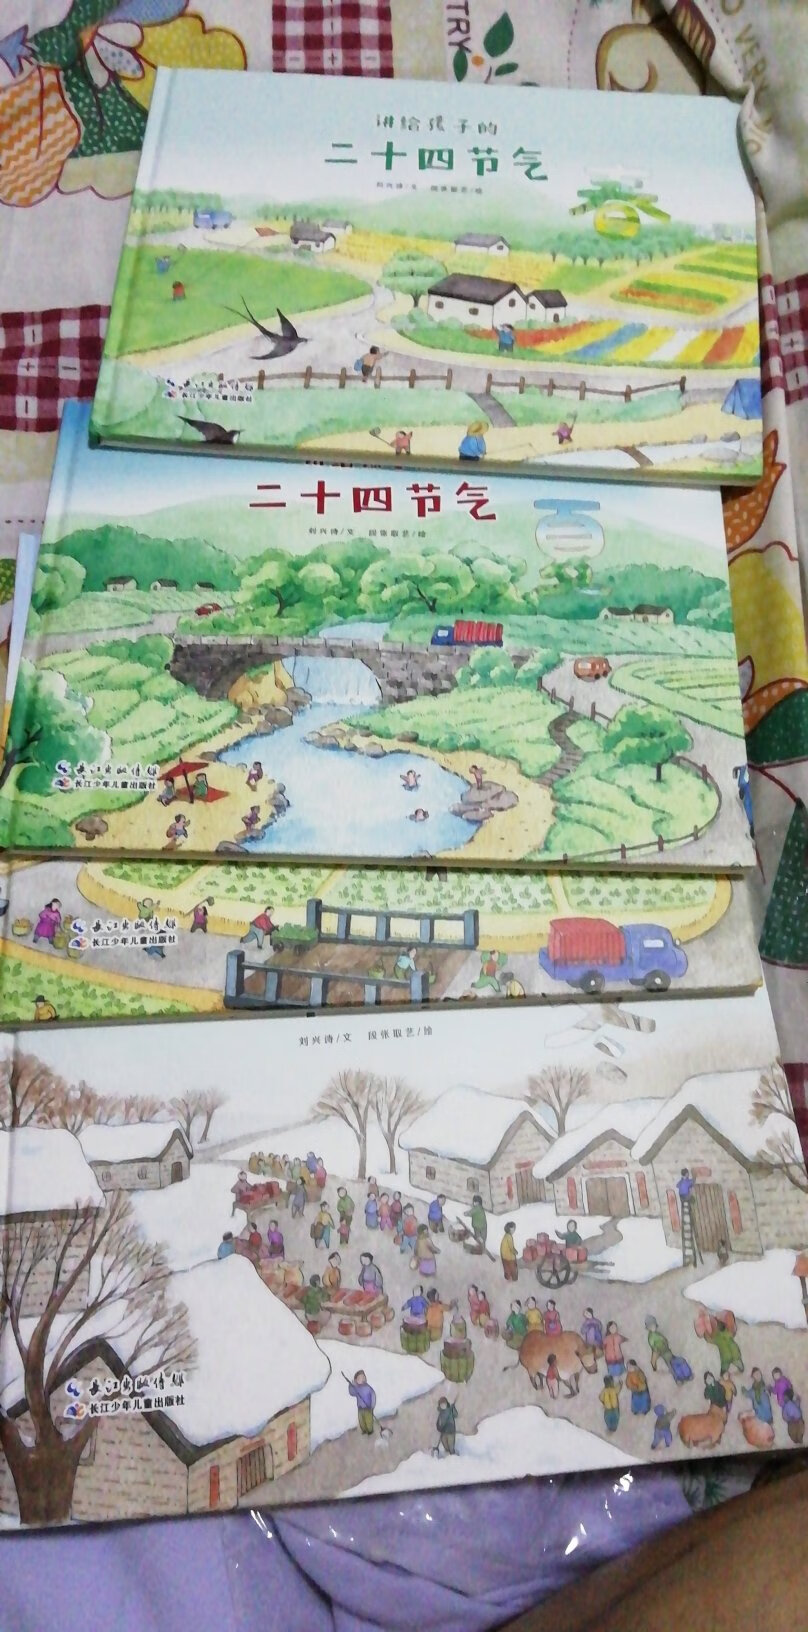 非常棒的一套书，刘兴诗著，长江出版社出版，图文并茂，孩子很喜欢，给力！